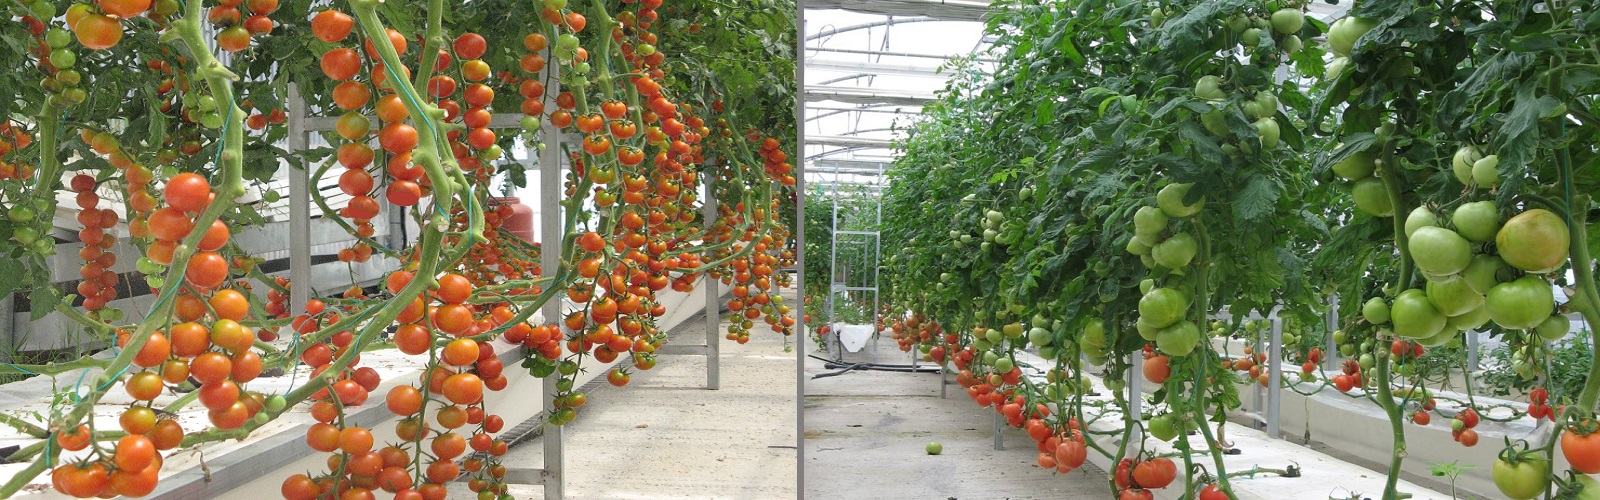 Aeroponics Tomatoes